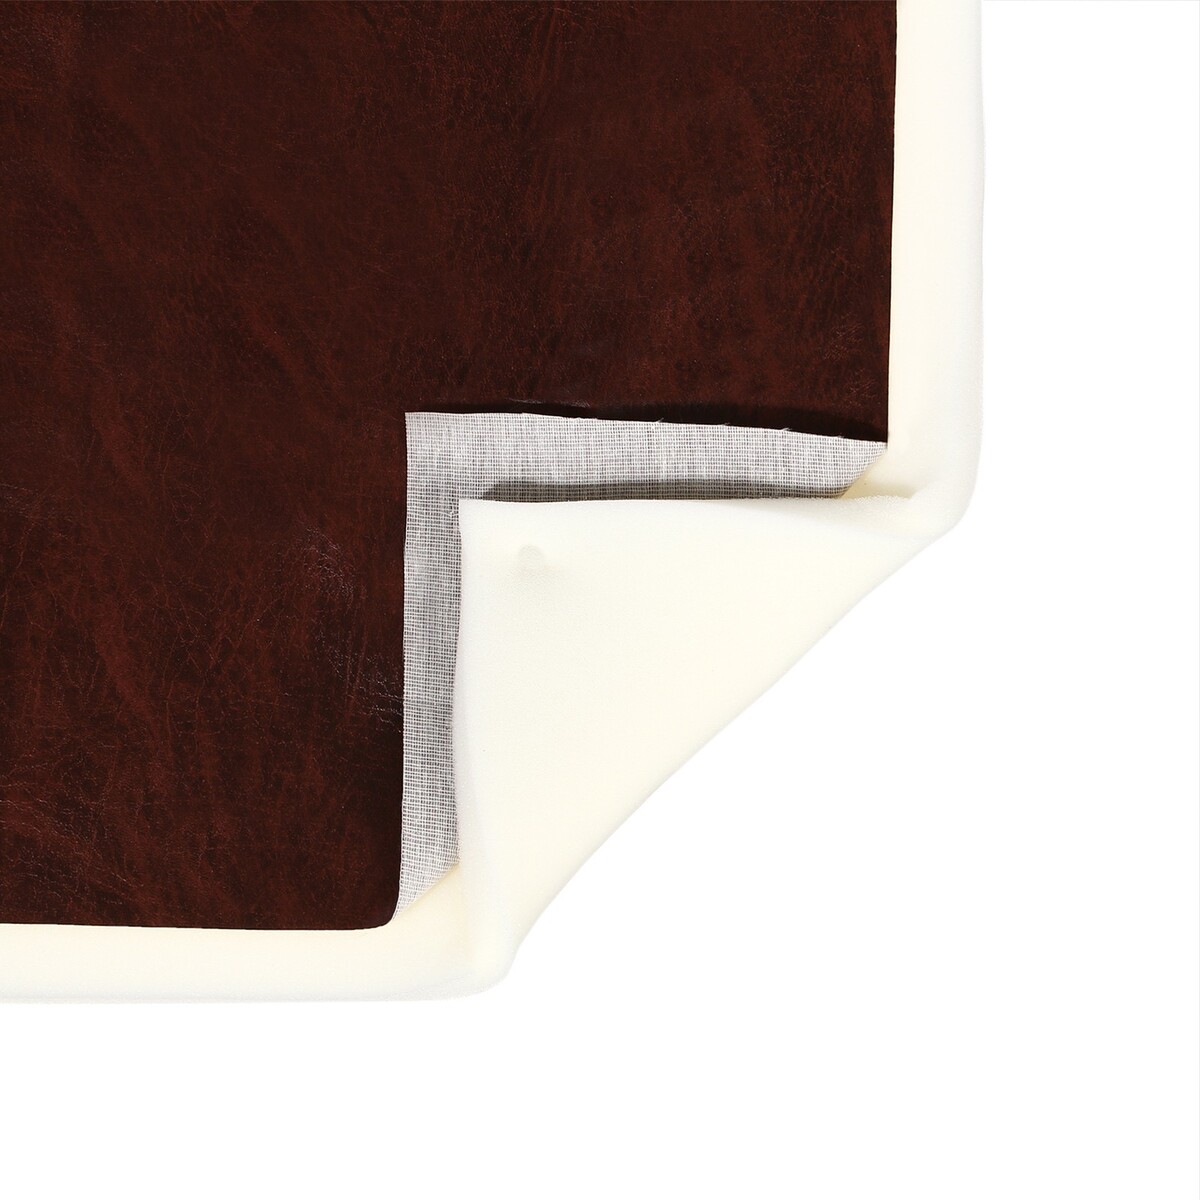 Комплект для перетяжки мебели, 50 × 100 см: иск.кожа, поролон 20 мм, коричневый носки для мебели cappio коричневый